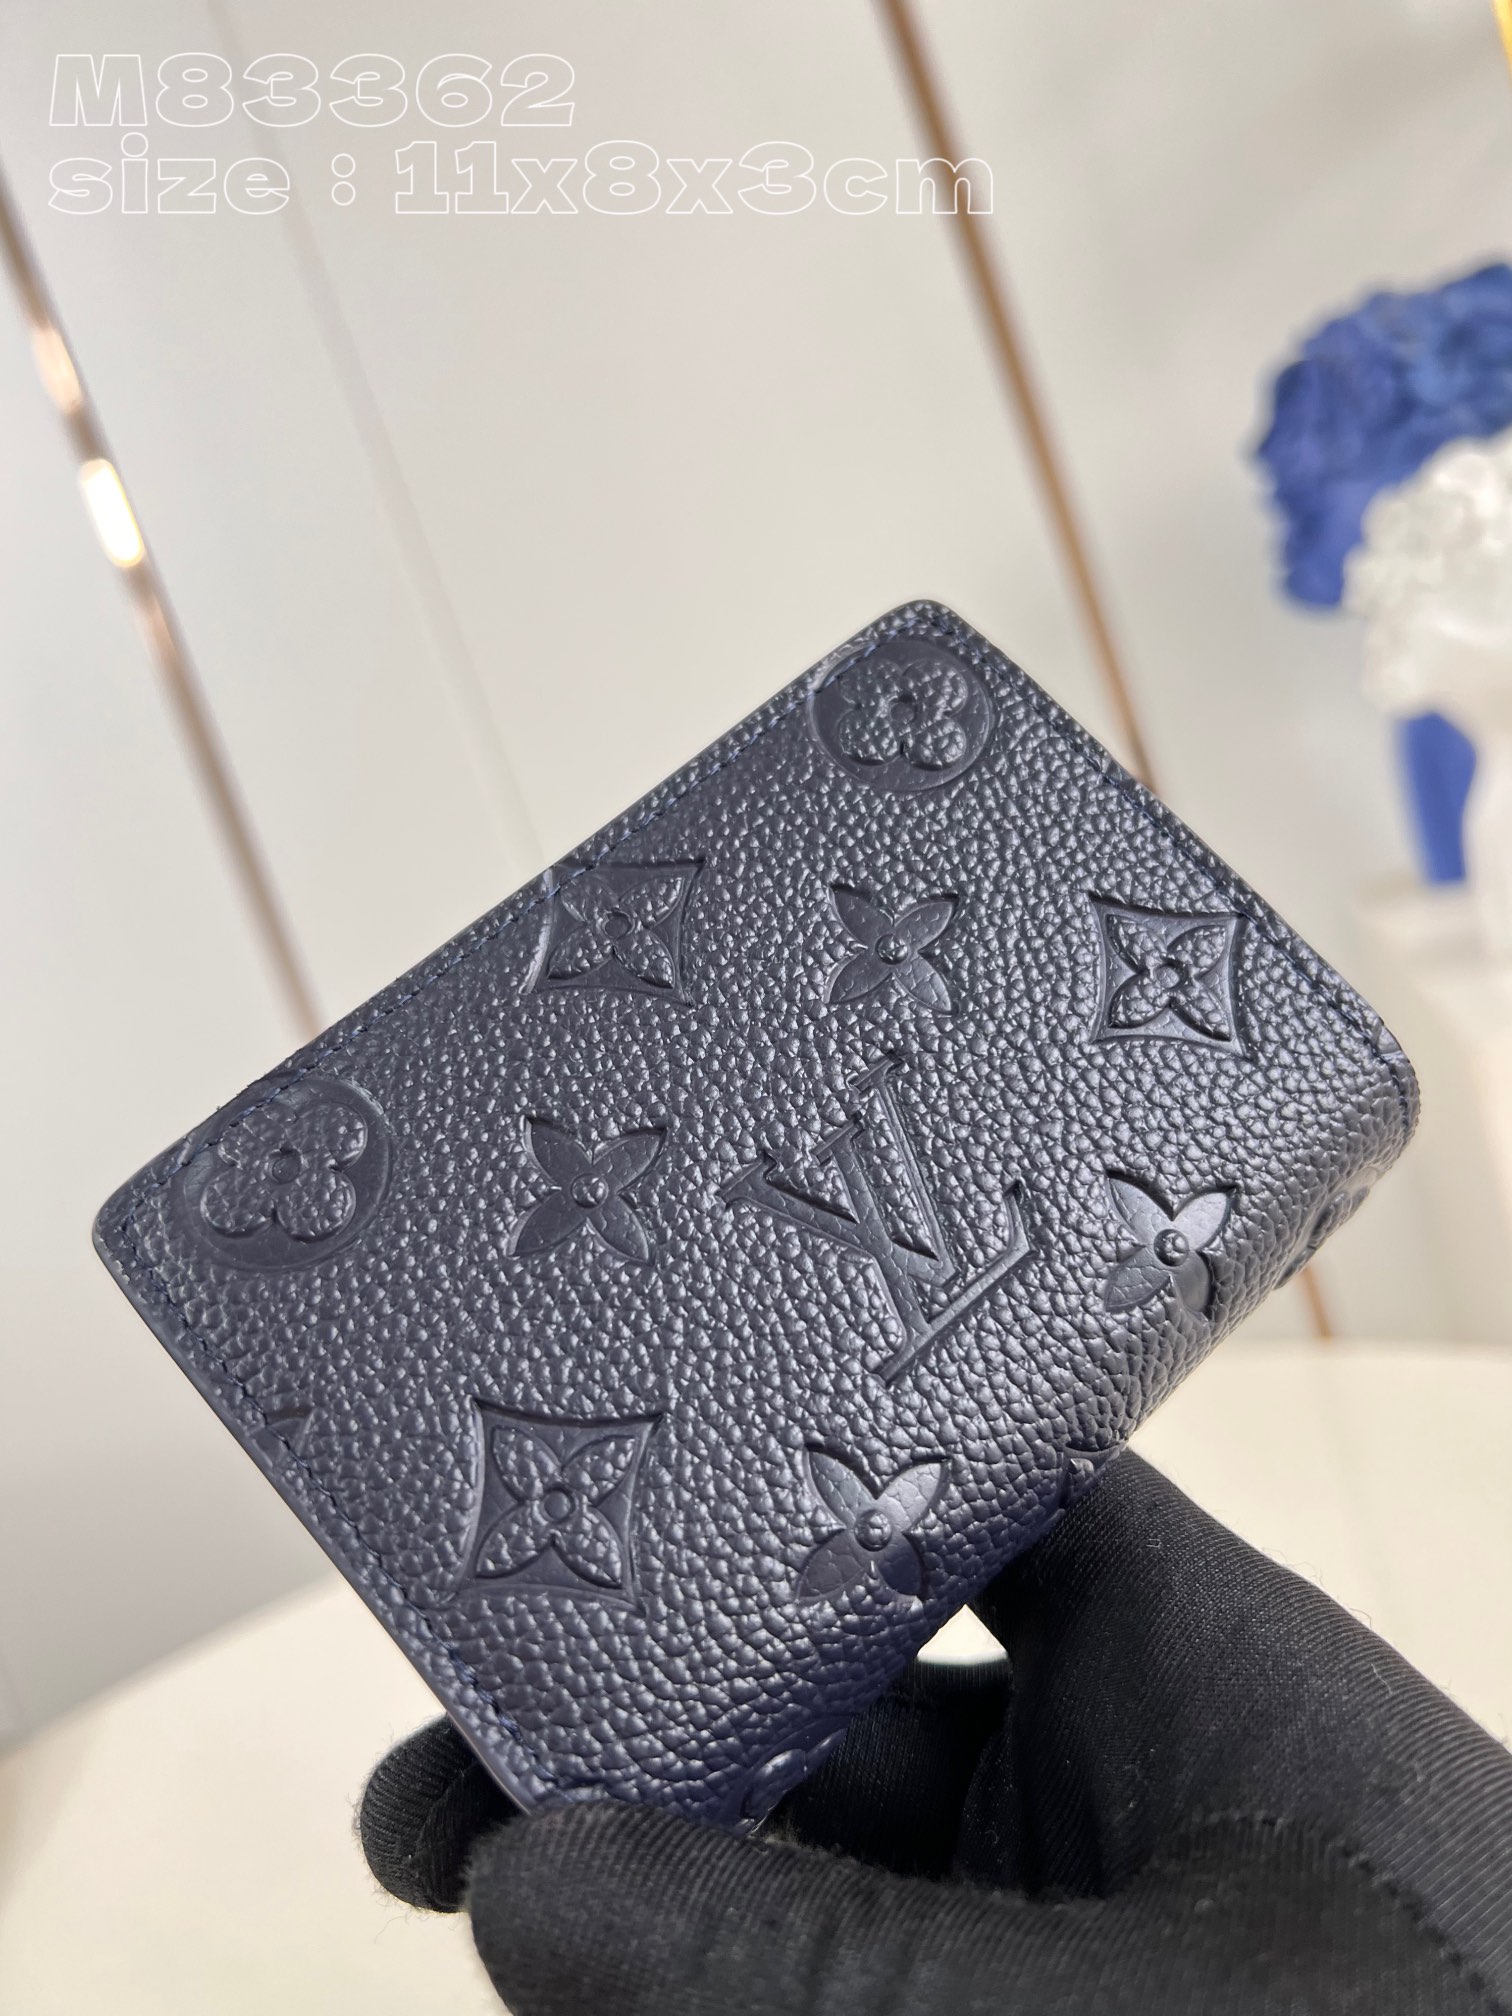 Louis Vuitton Geldbörse Replik für billig
 Blau Dunkelblau Empreinte​ Rindsleder Fashion M83362